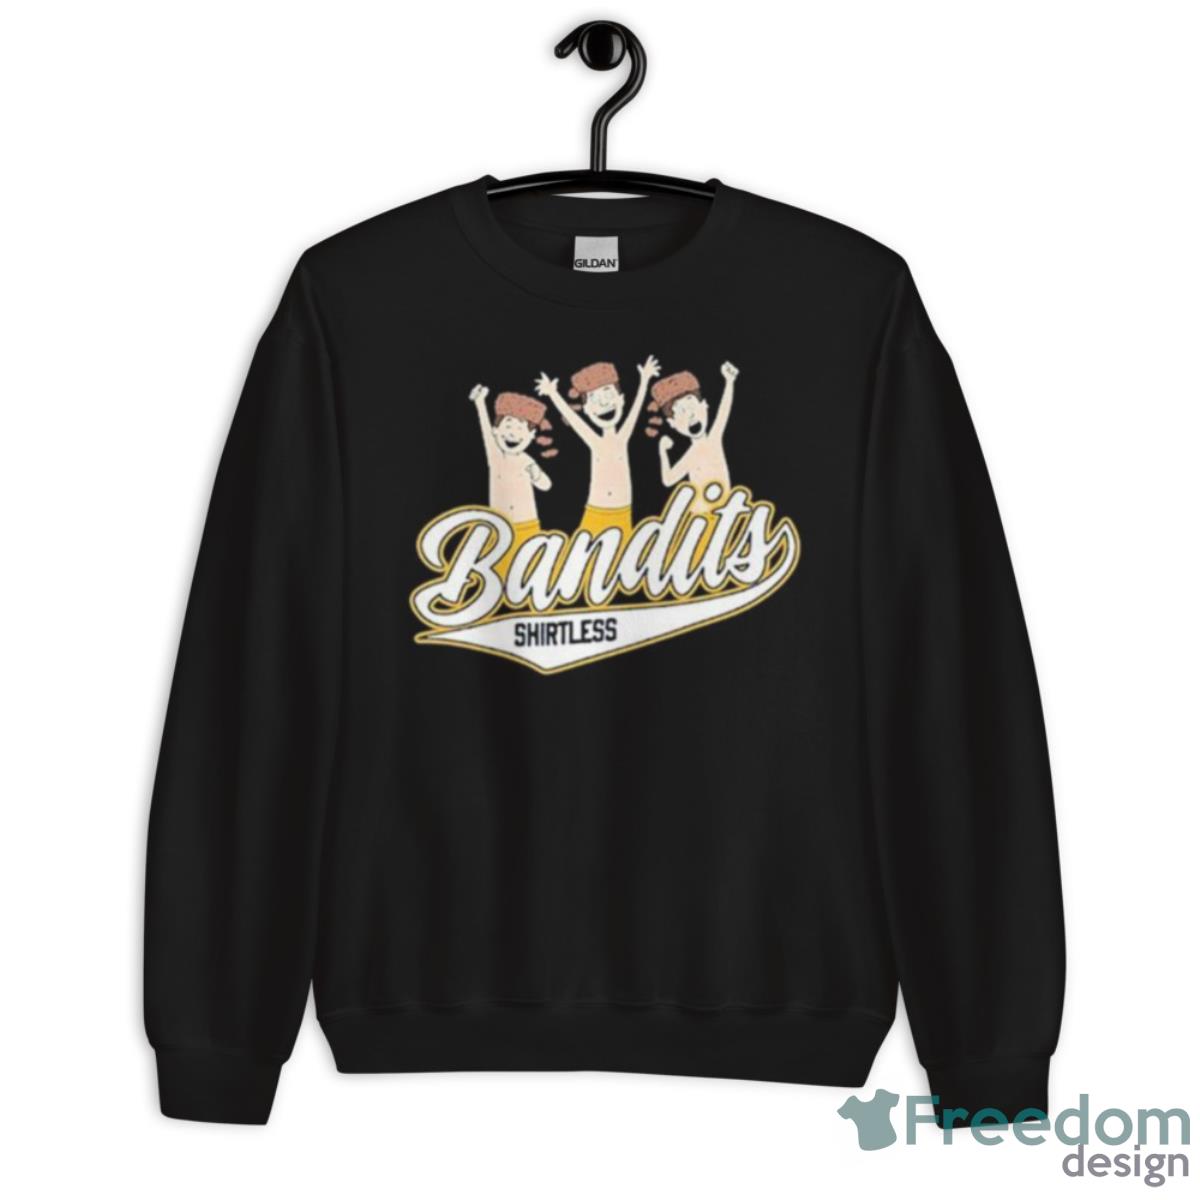 Shirtless Bandits Shirt